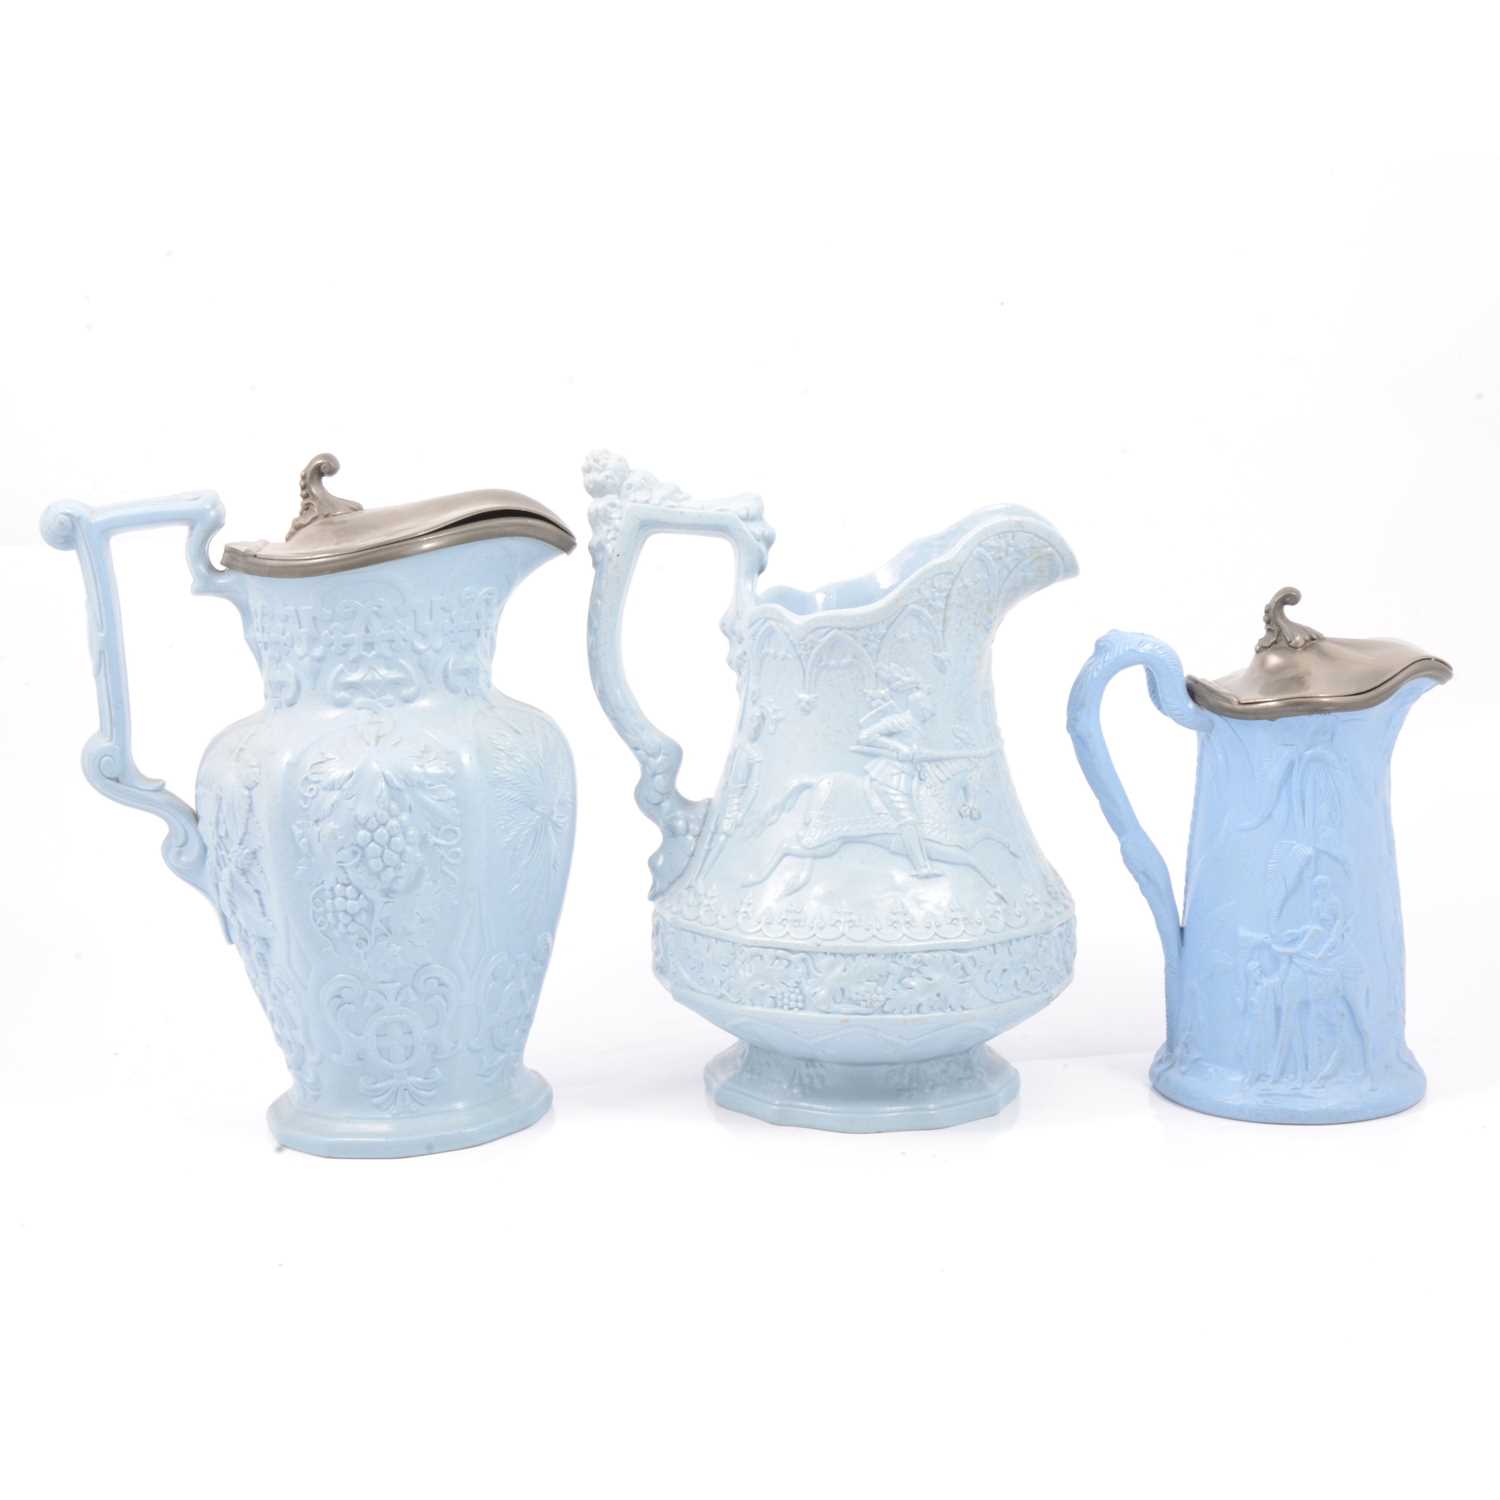 Lot 62 - Stoneware Eglington jug, Hops & Barley jug and a Camel jug